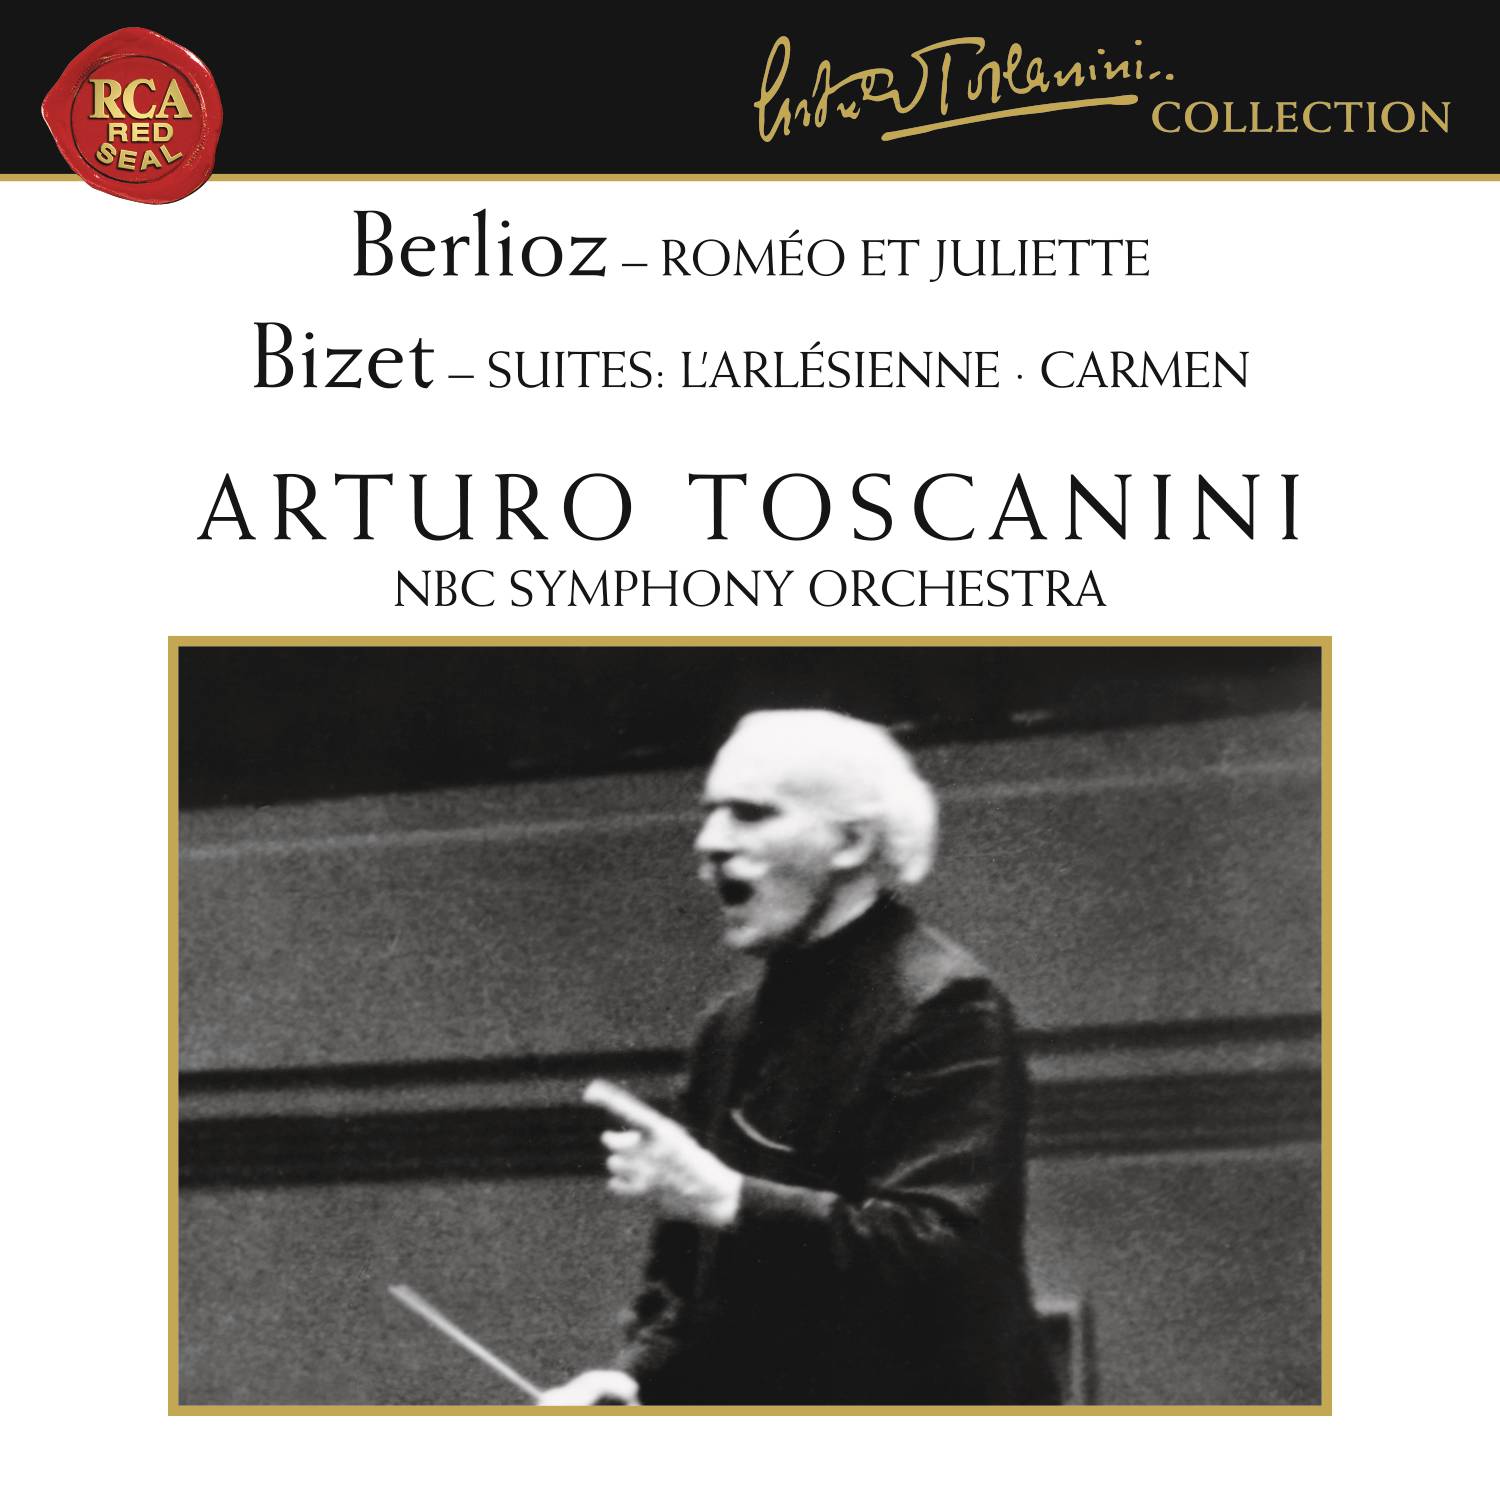 Berlioz: Roméo et Juliette, Op. 17 - Bizet: L'Arlésienne Suite & Carmen Suite